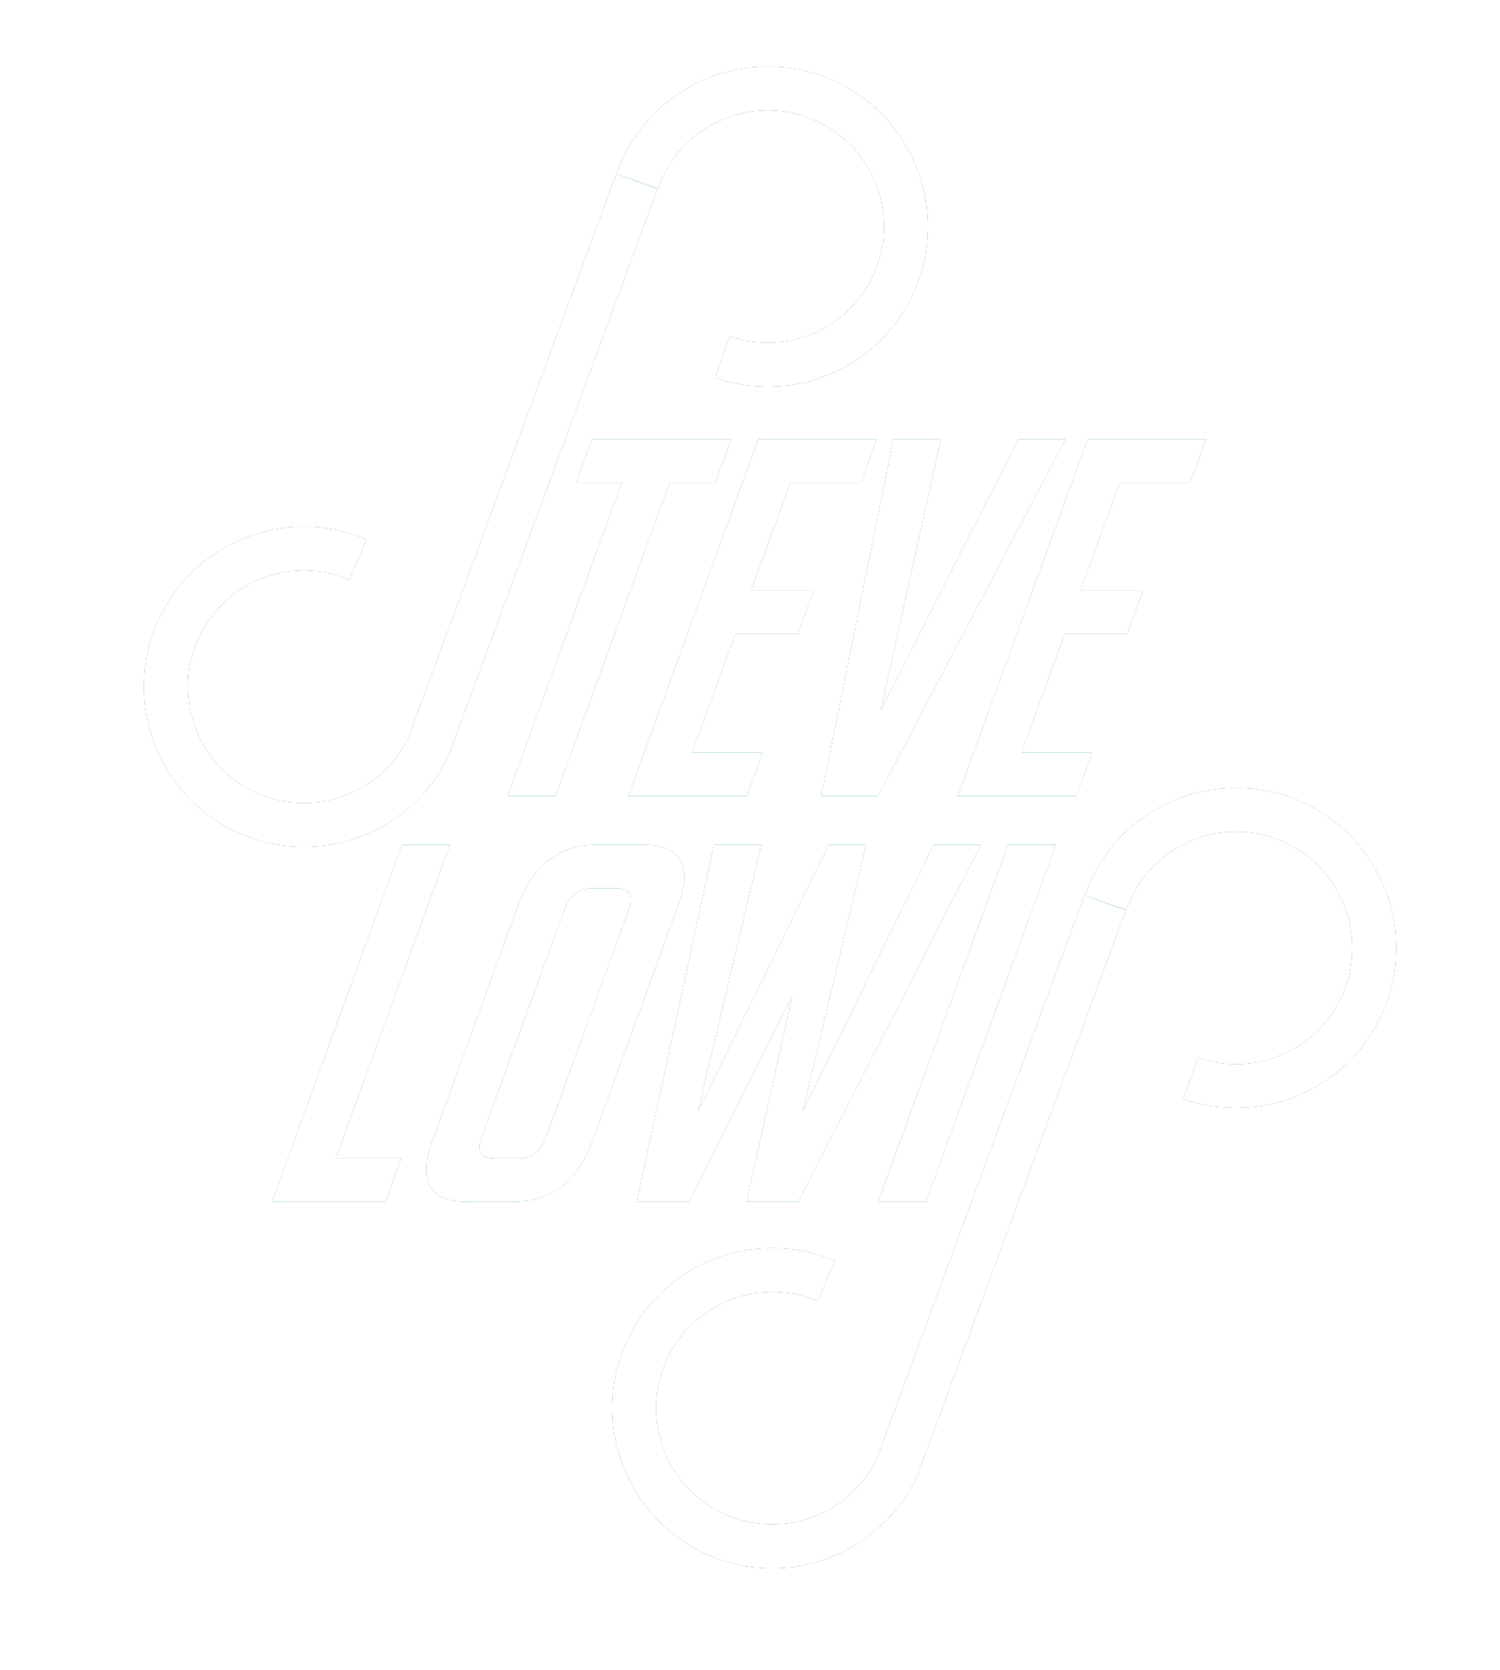 Steve Lowis